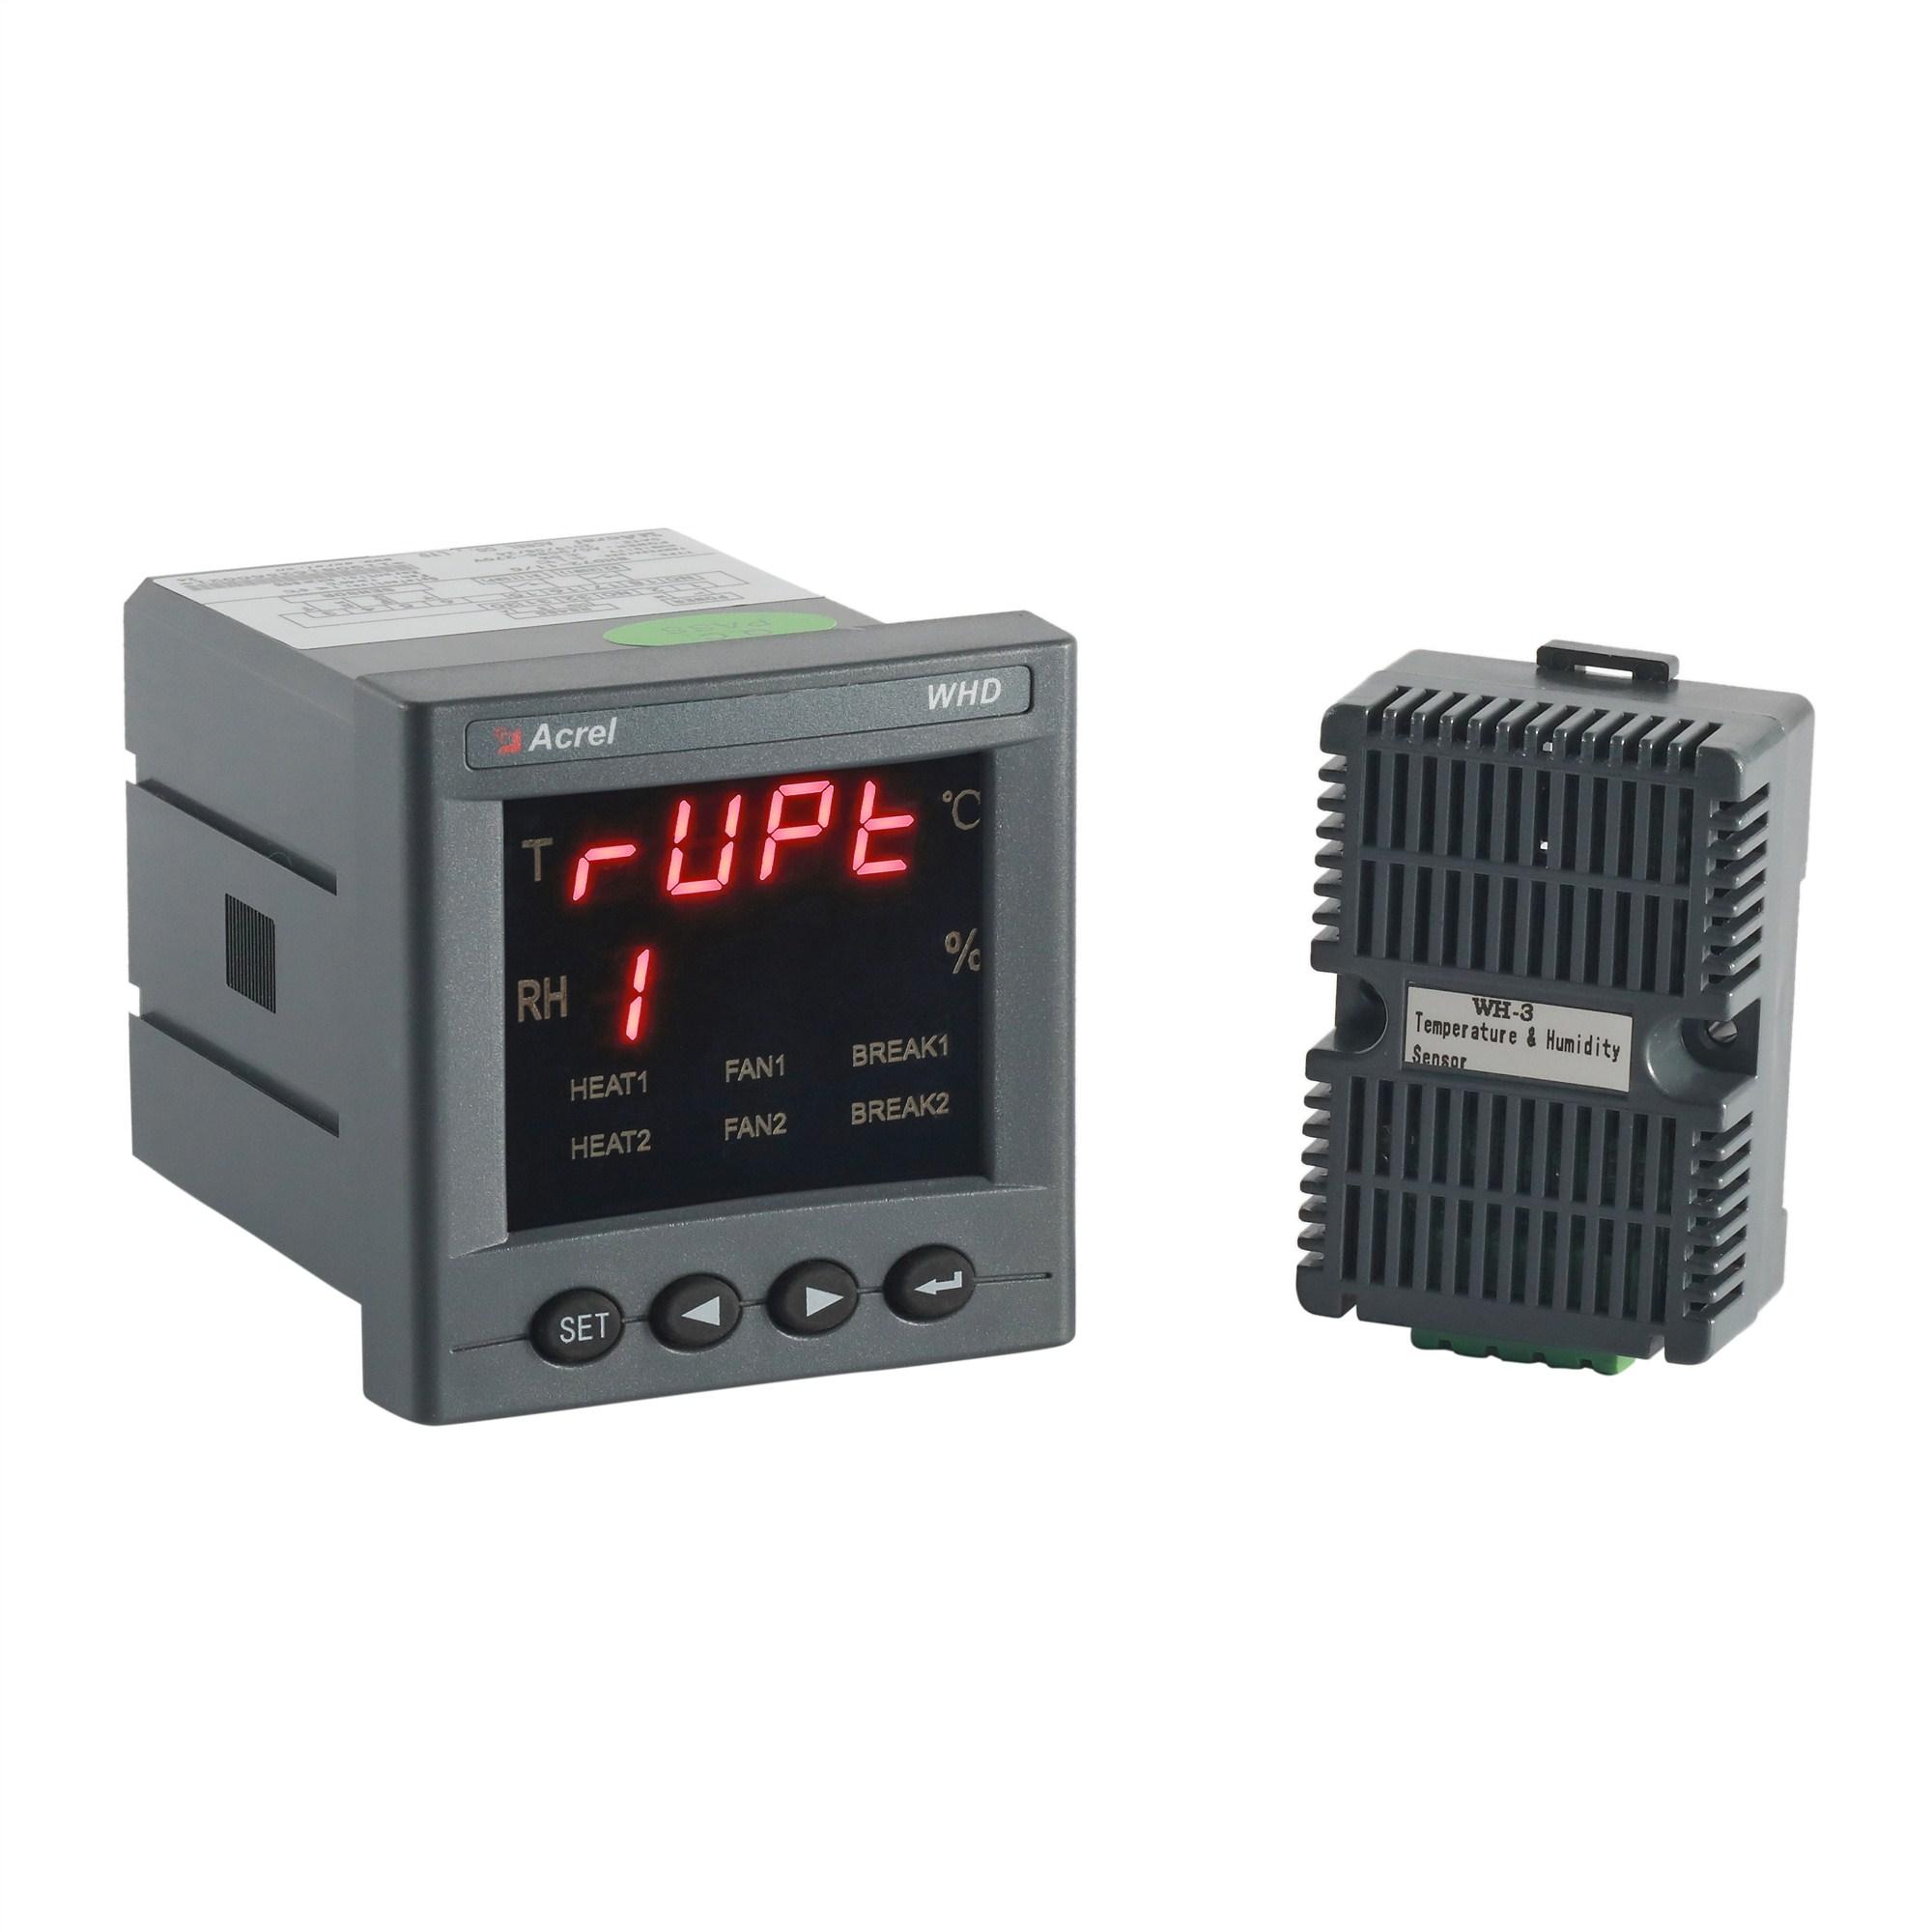 WHD72-11温湿度控制器生产厂家